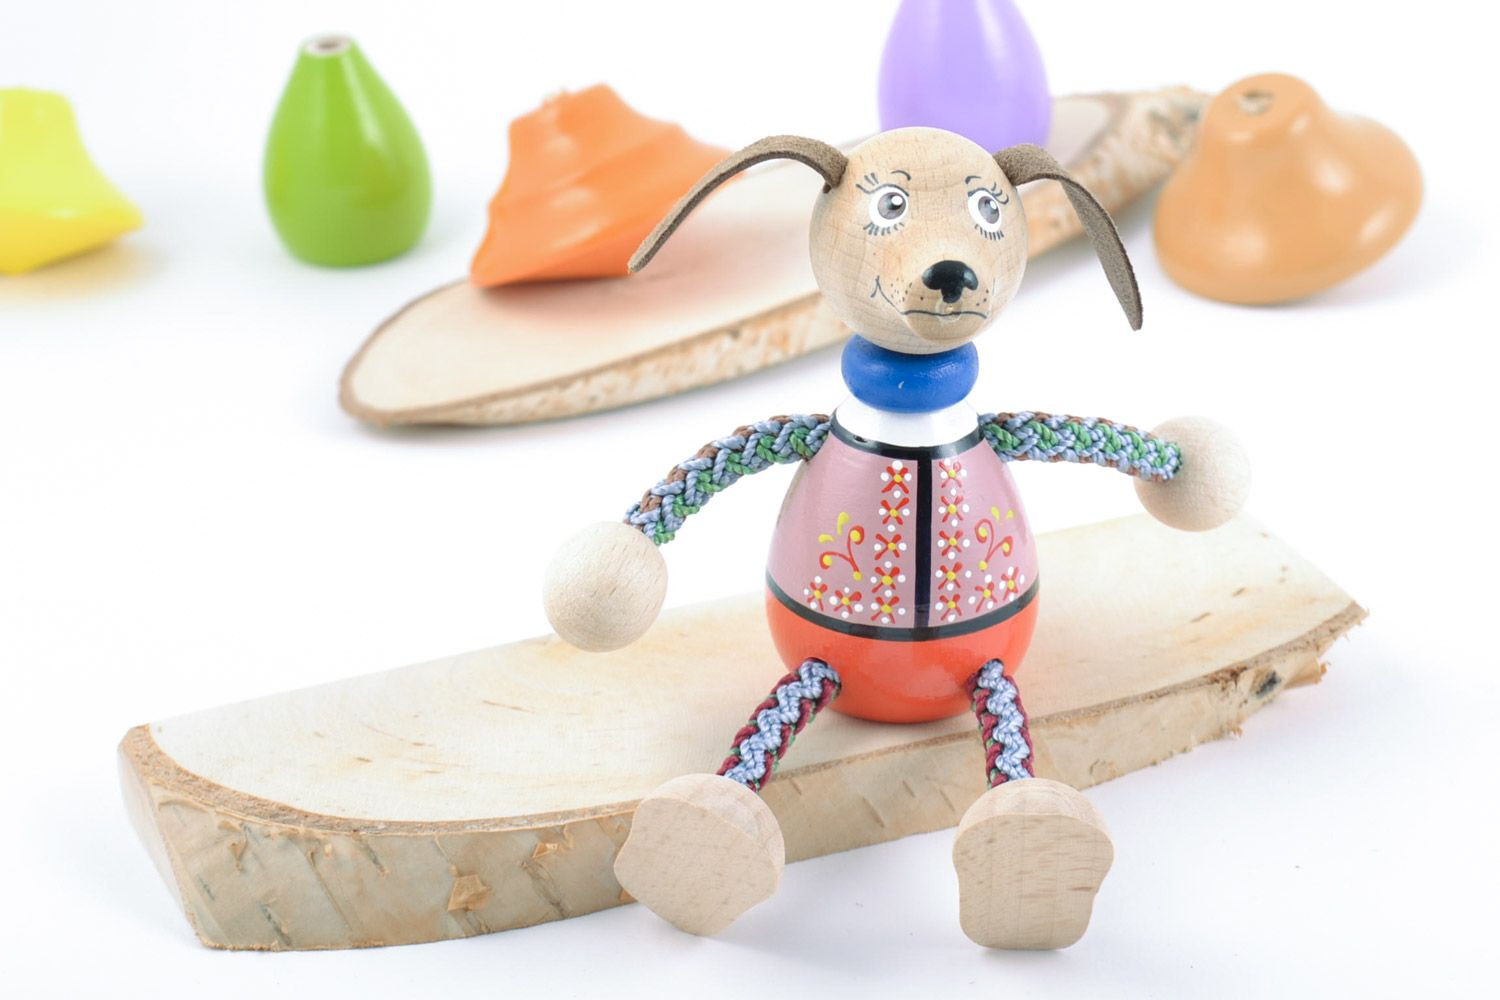 Jouet en bois original fait main peint figurine décorative pour enfant Chien photo 1